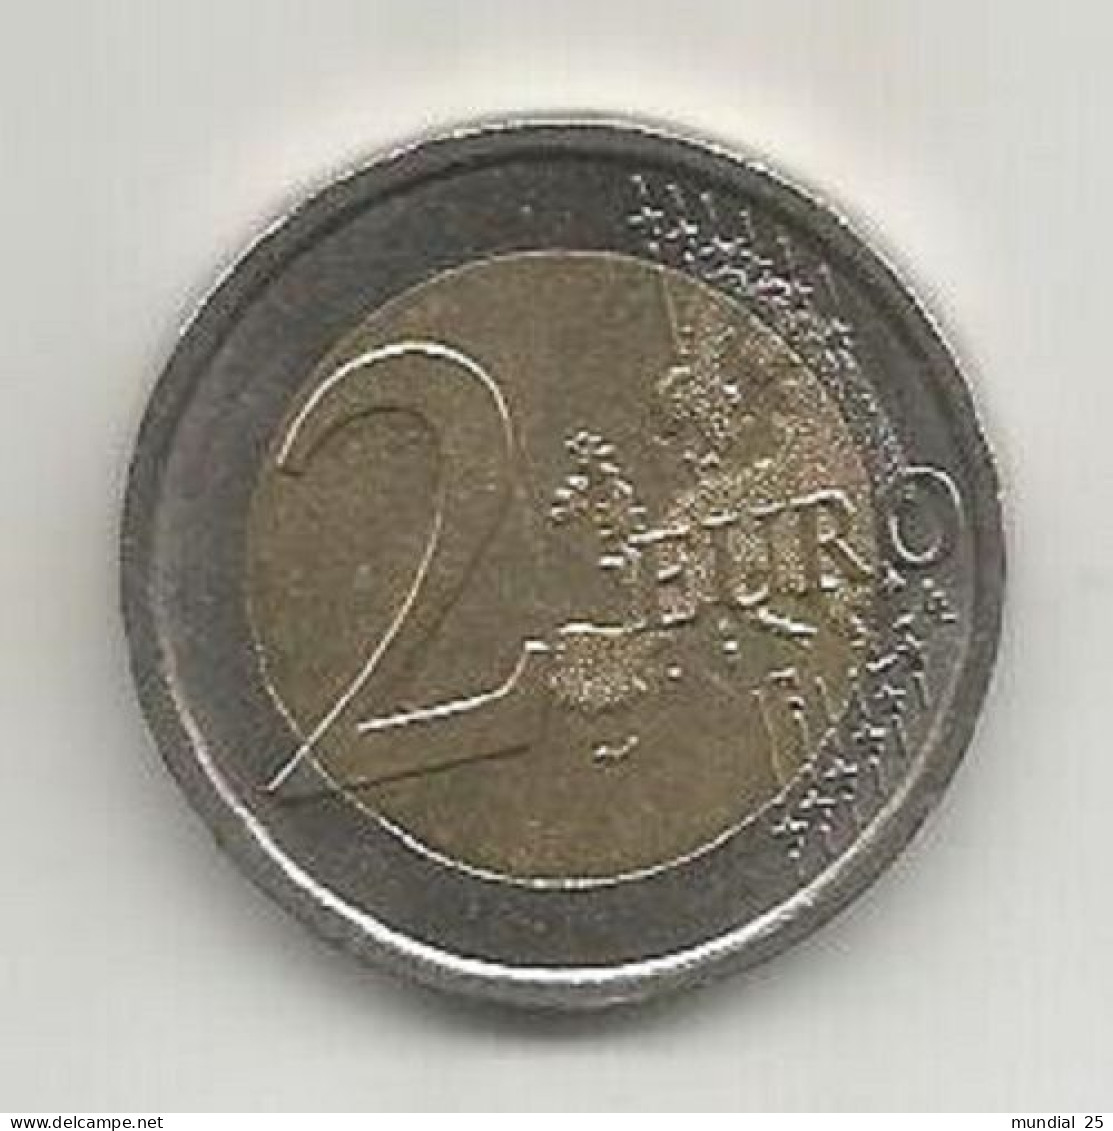 ITALY 2 EURO 2012 (R) - EUROCOINAGE, 10th ANNIVERSARY - Italien